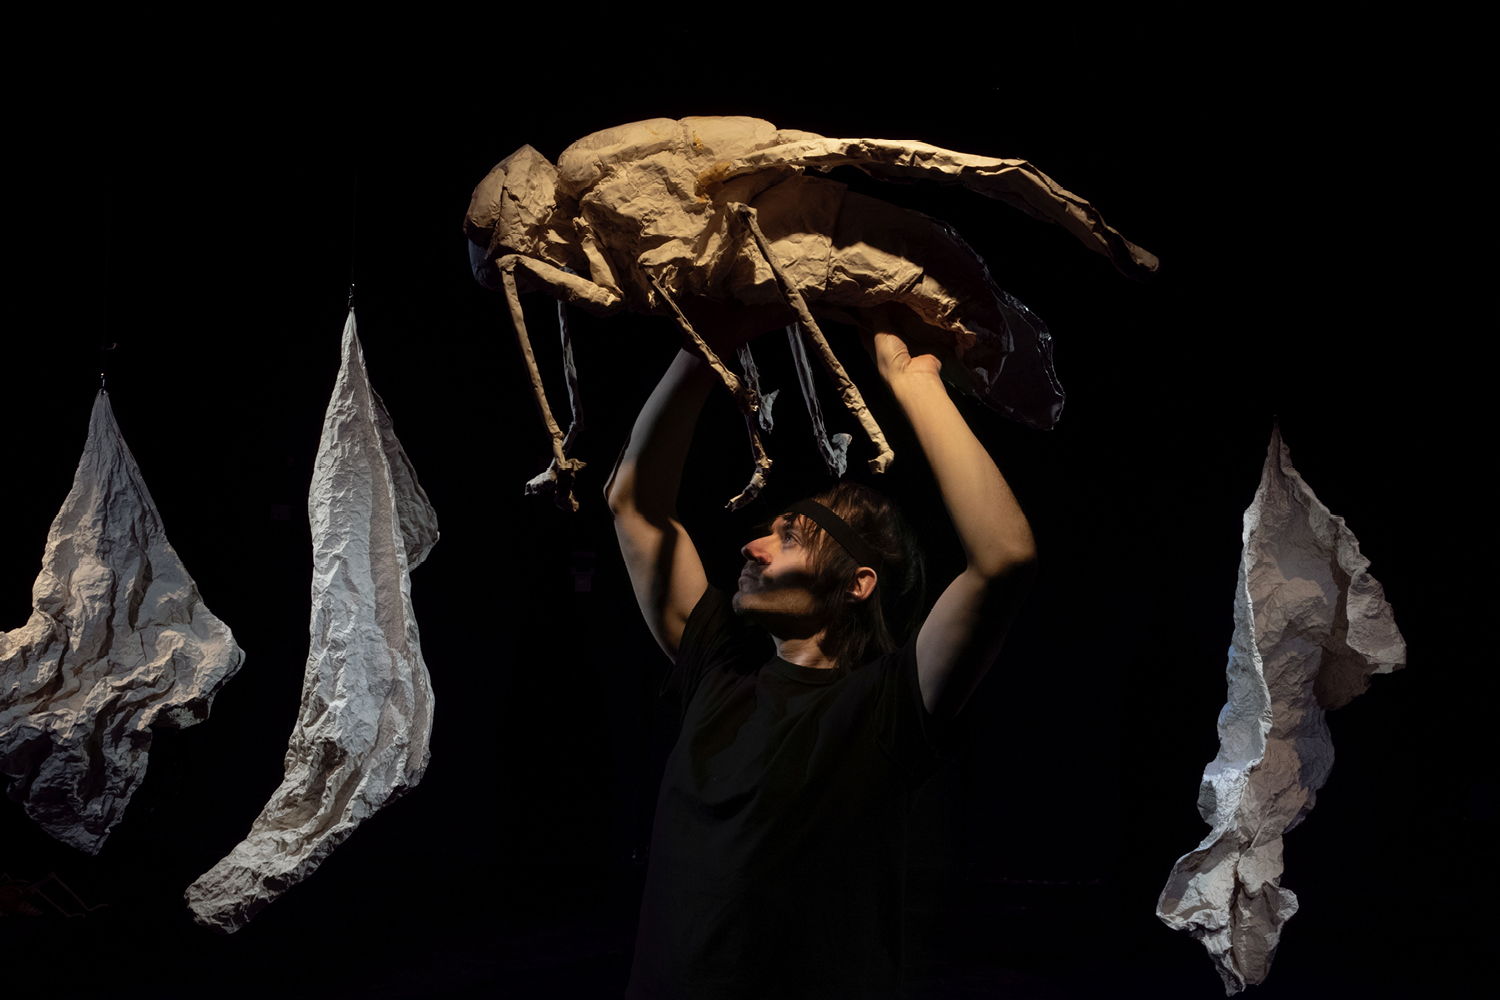 Performer hält überlebensgroßes Fliegenmodell aus einem papierähnlichen Material über seinen Kopf. Im Hintergrund sind drei weiße, von der Decke hängende Formen von ca. 1,5m Länge auf der Bühne erkennbar, die wie zusammengeknülltes und wieder auseinandergefaltete Papierbahnen wirken